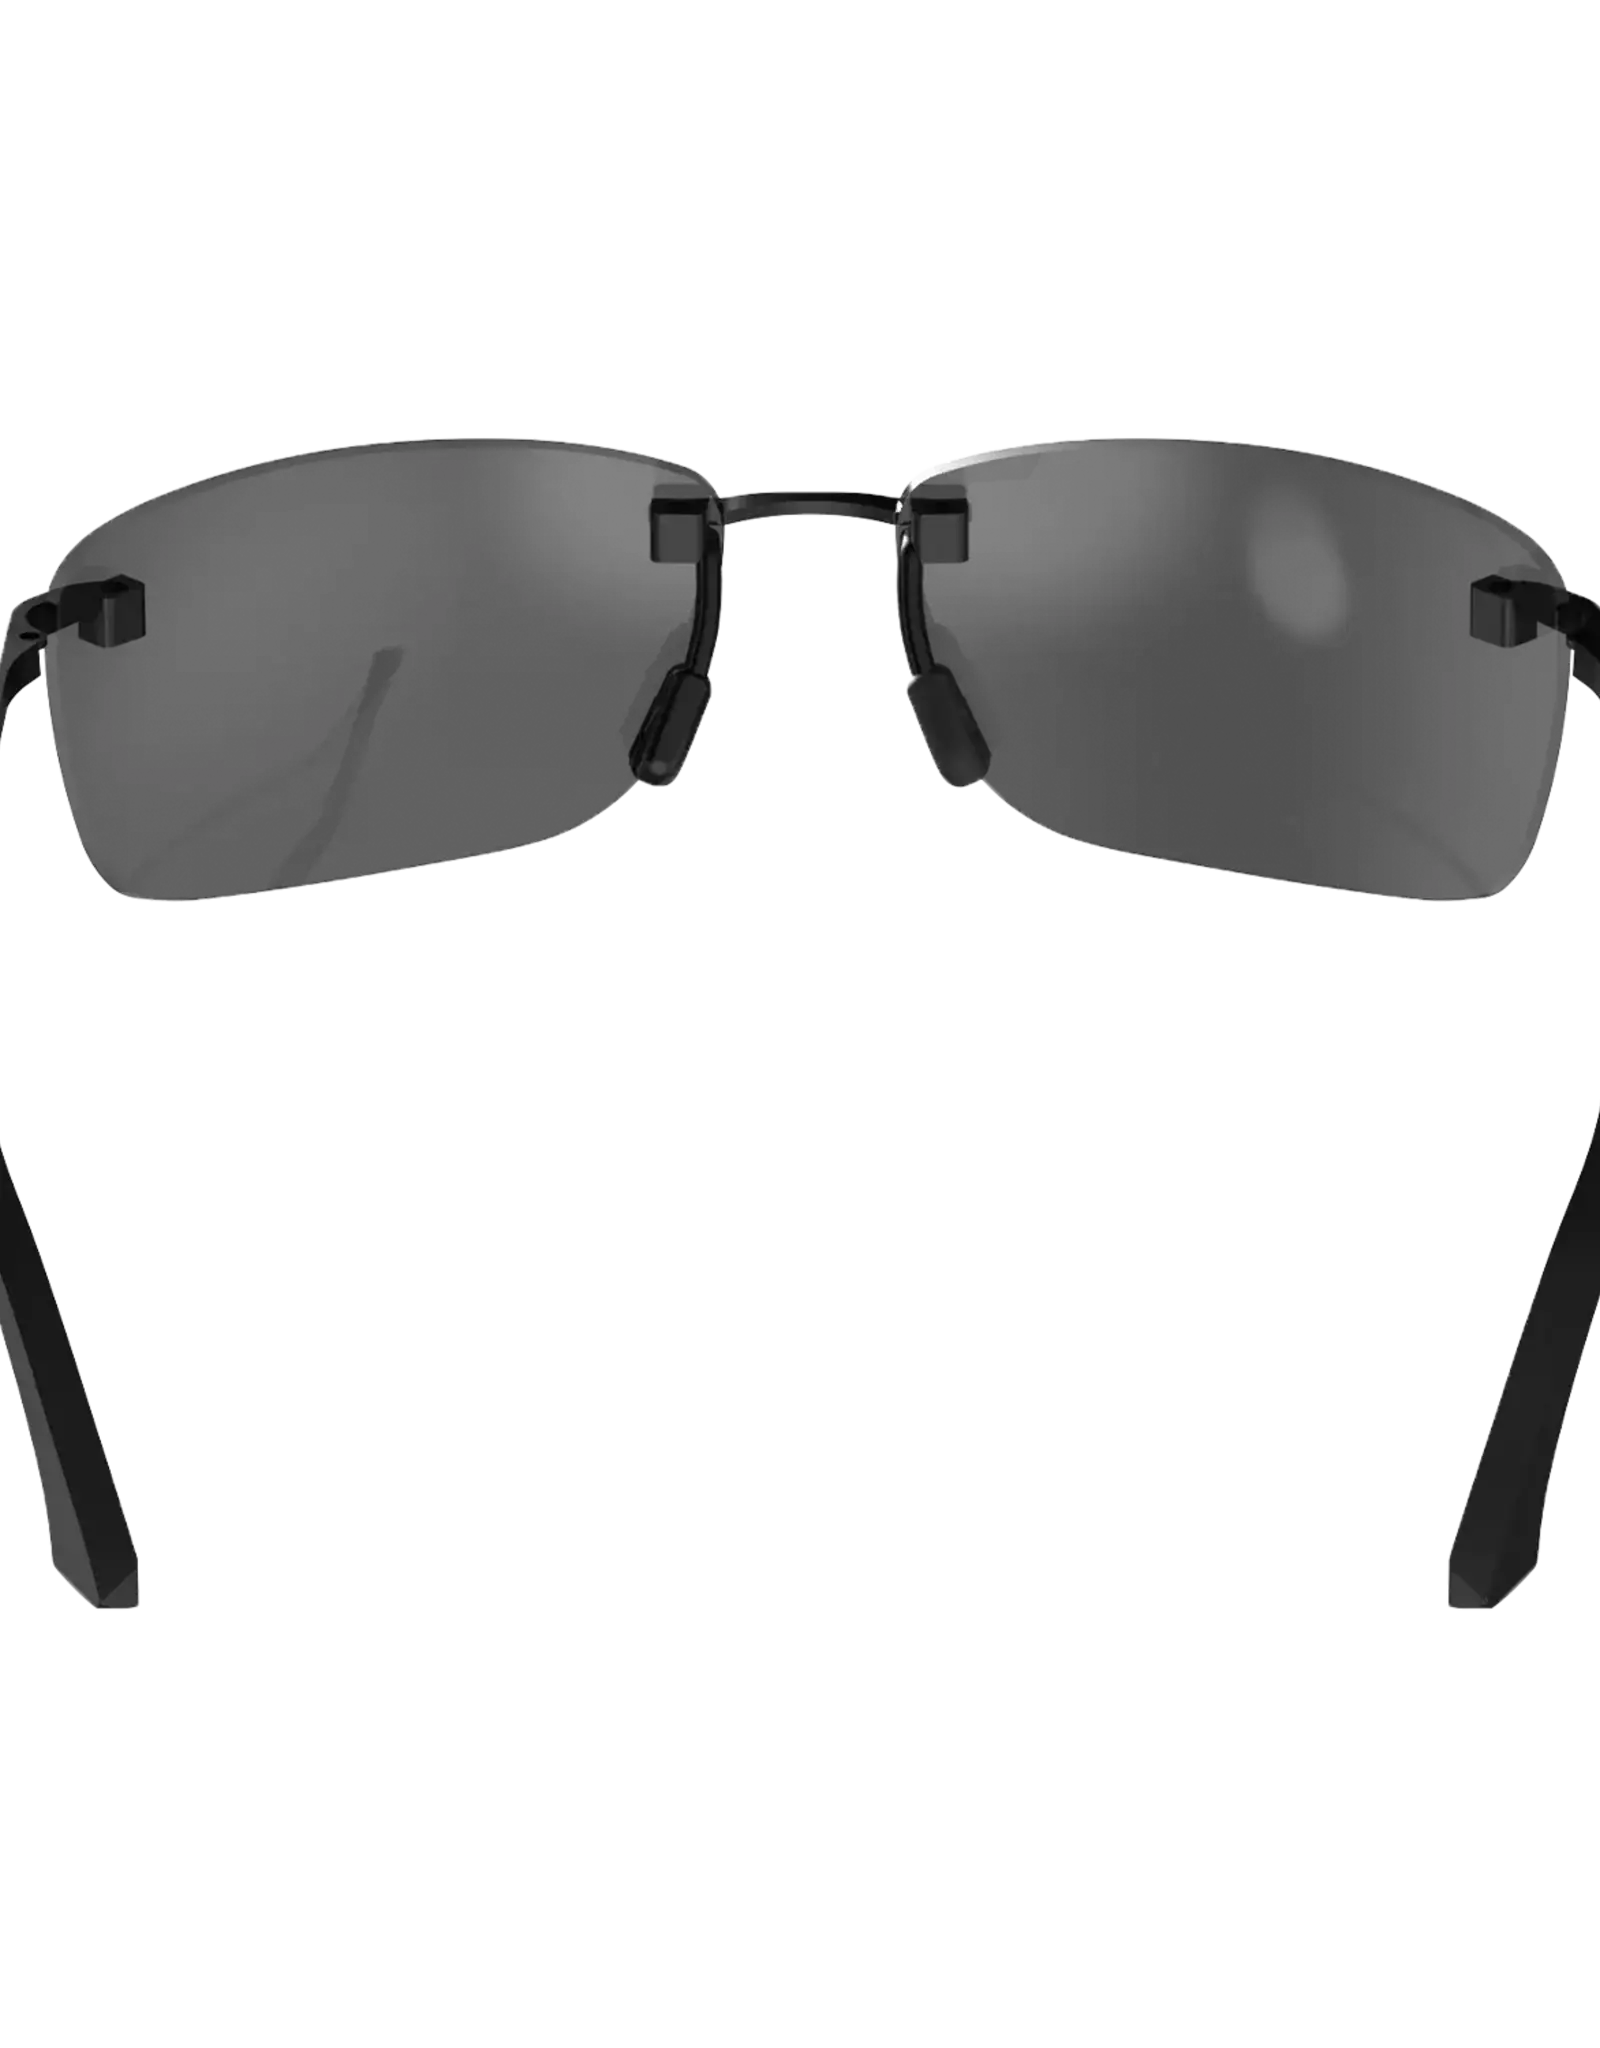 BEX BEX LEGOLAS Sunglasses Black - Gray